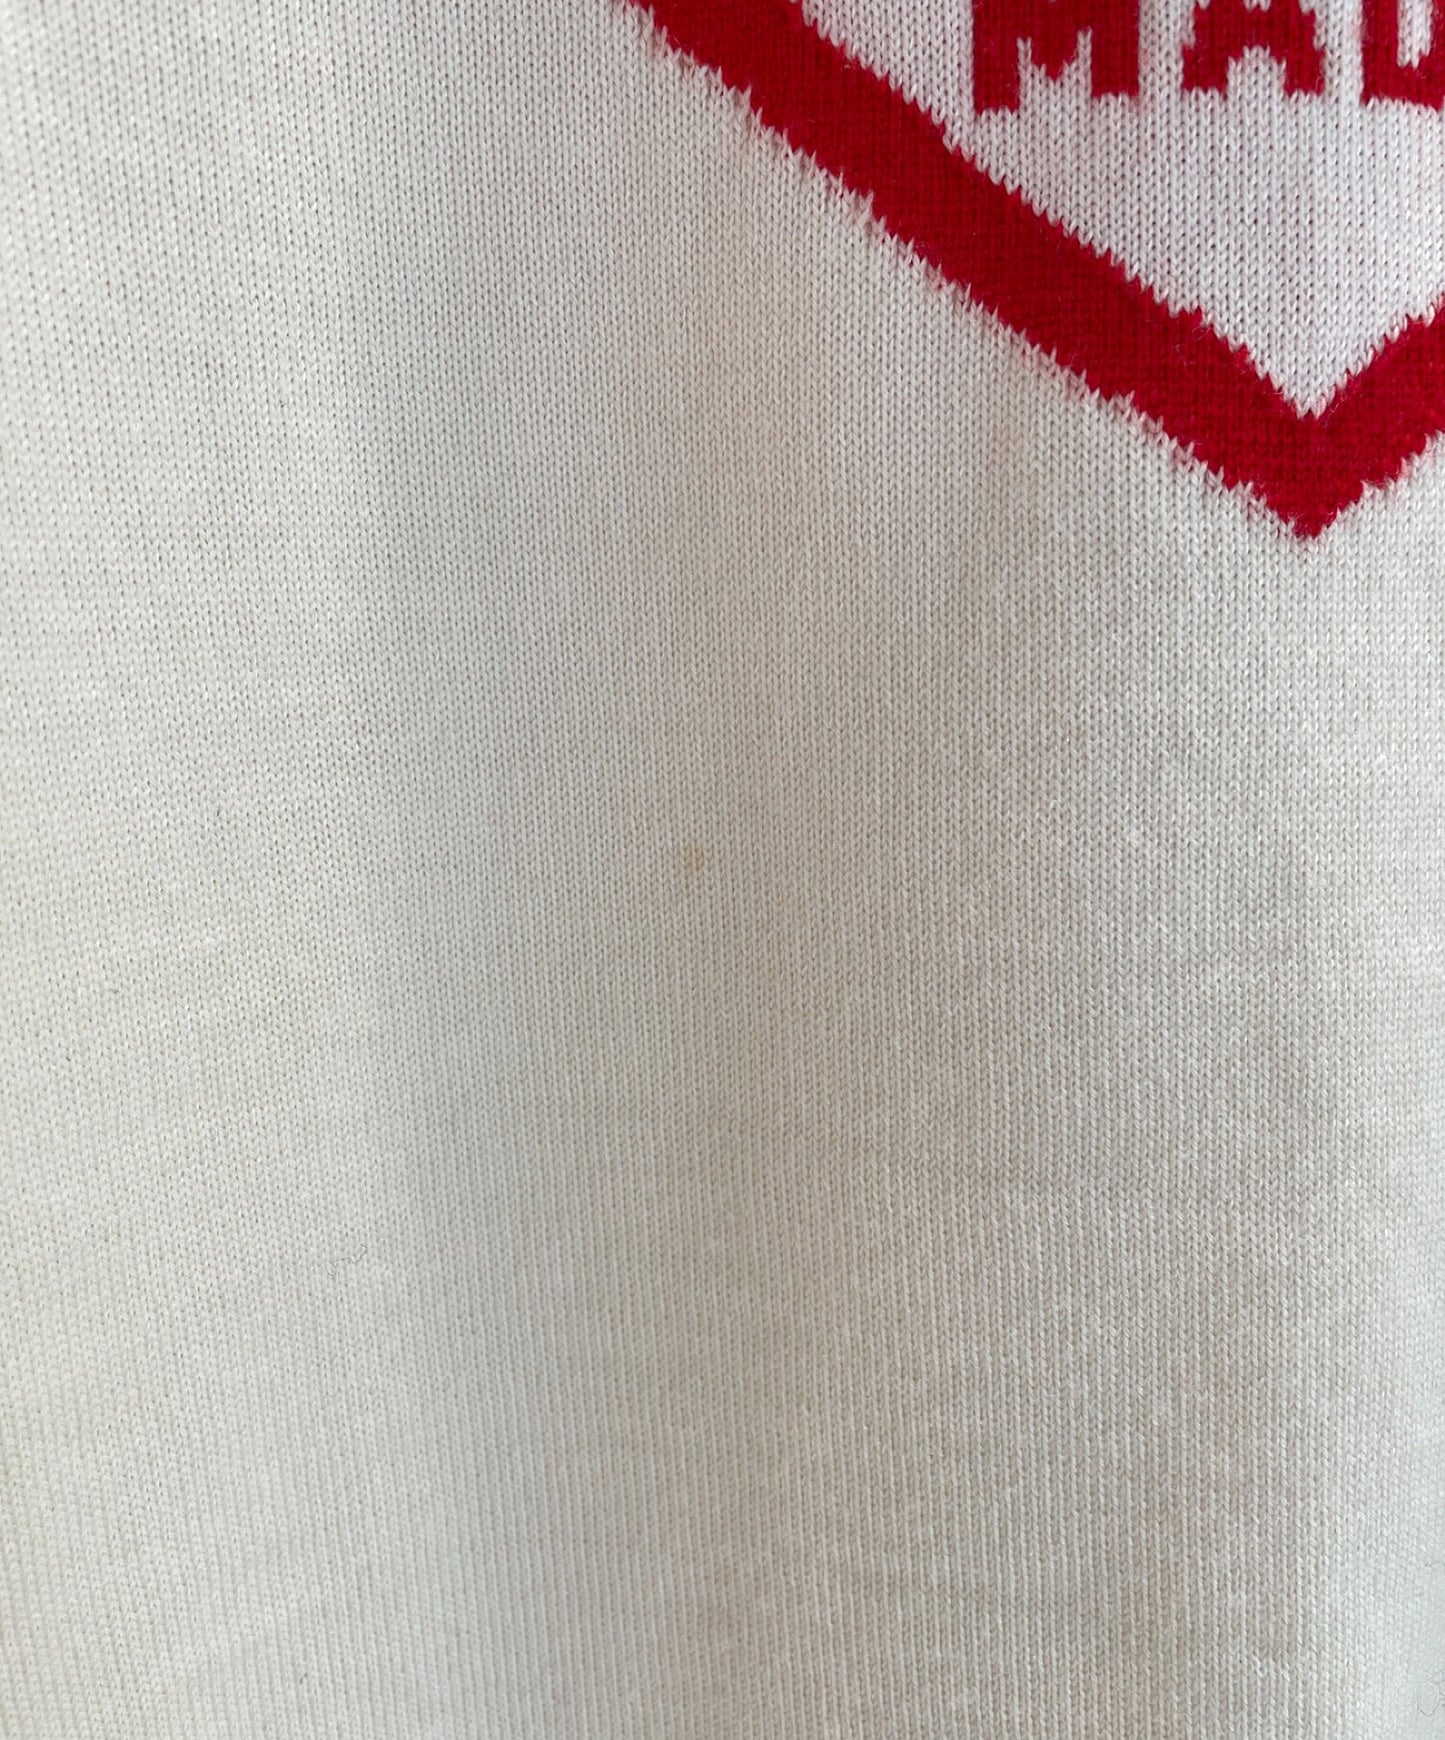 Louis Vuitton × Nigo Intarsia Heart Turtleneck 니트 스웨터 rm221m